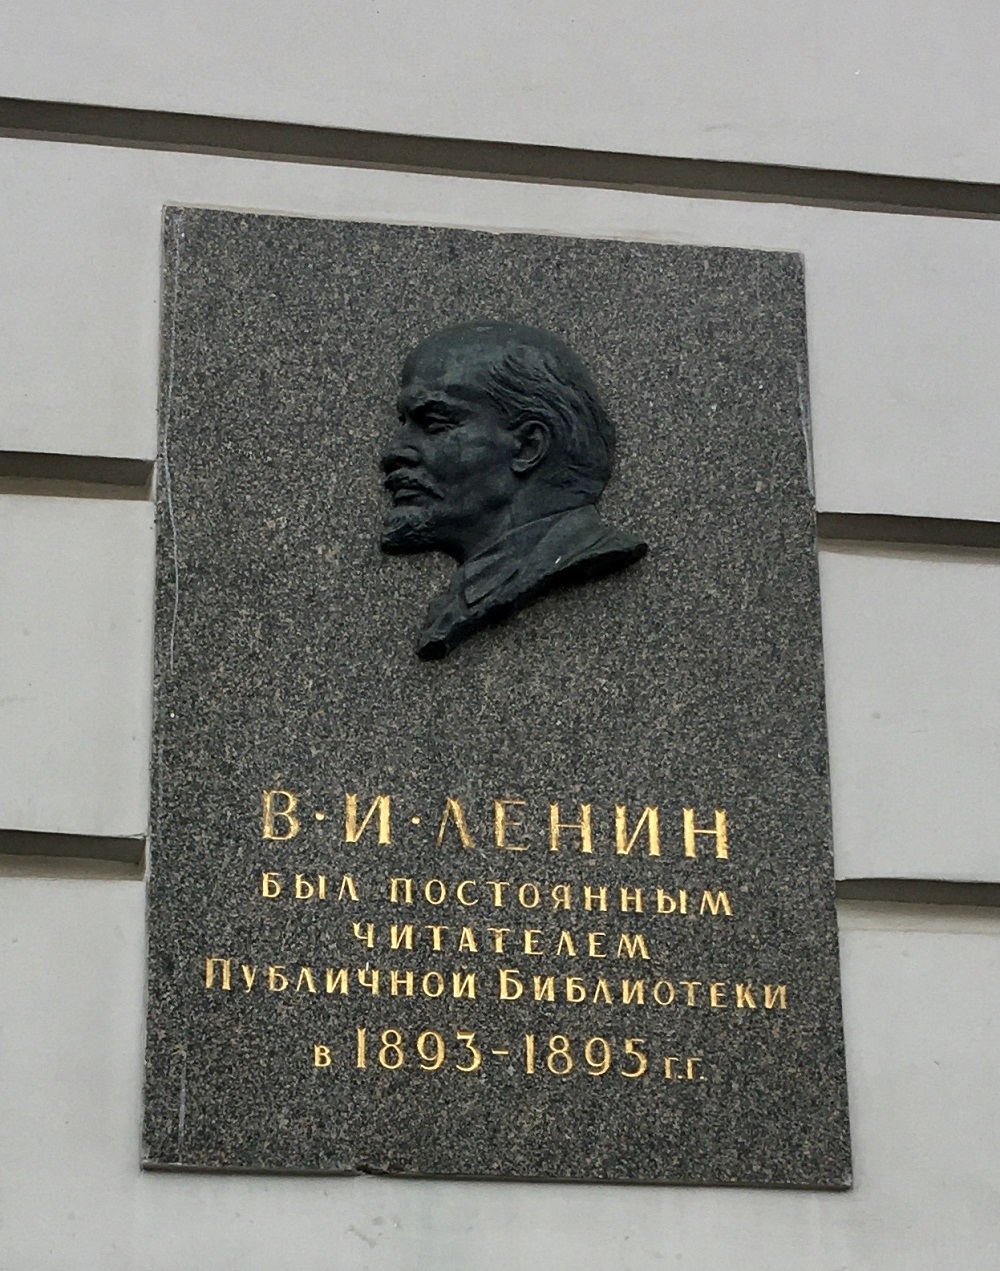 Petersburg, Площадь Островского, 1-3 (корпус Соколова). Petersburg — Memorial plaques